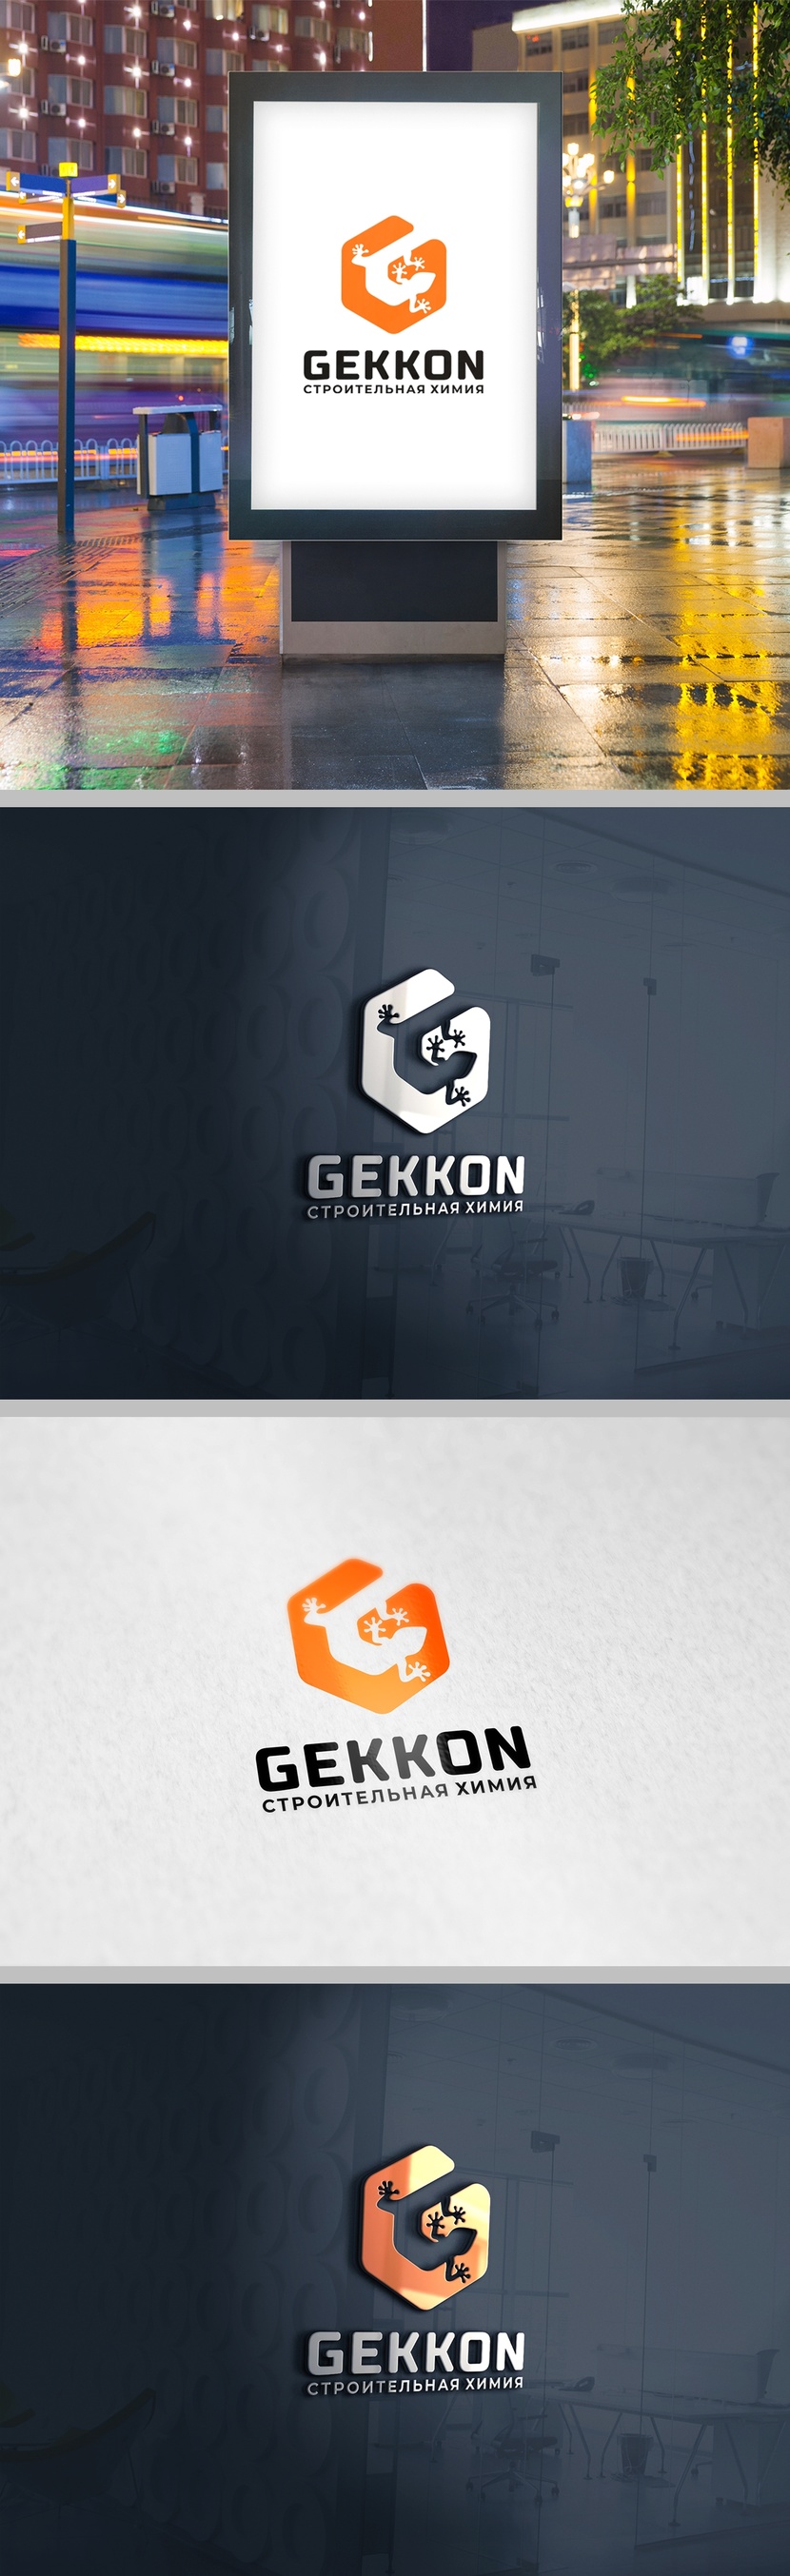 Геккон + Химия + Строительство + G - Логотип для производства полиуретановых материалов марки "Gekkon"